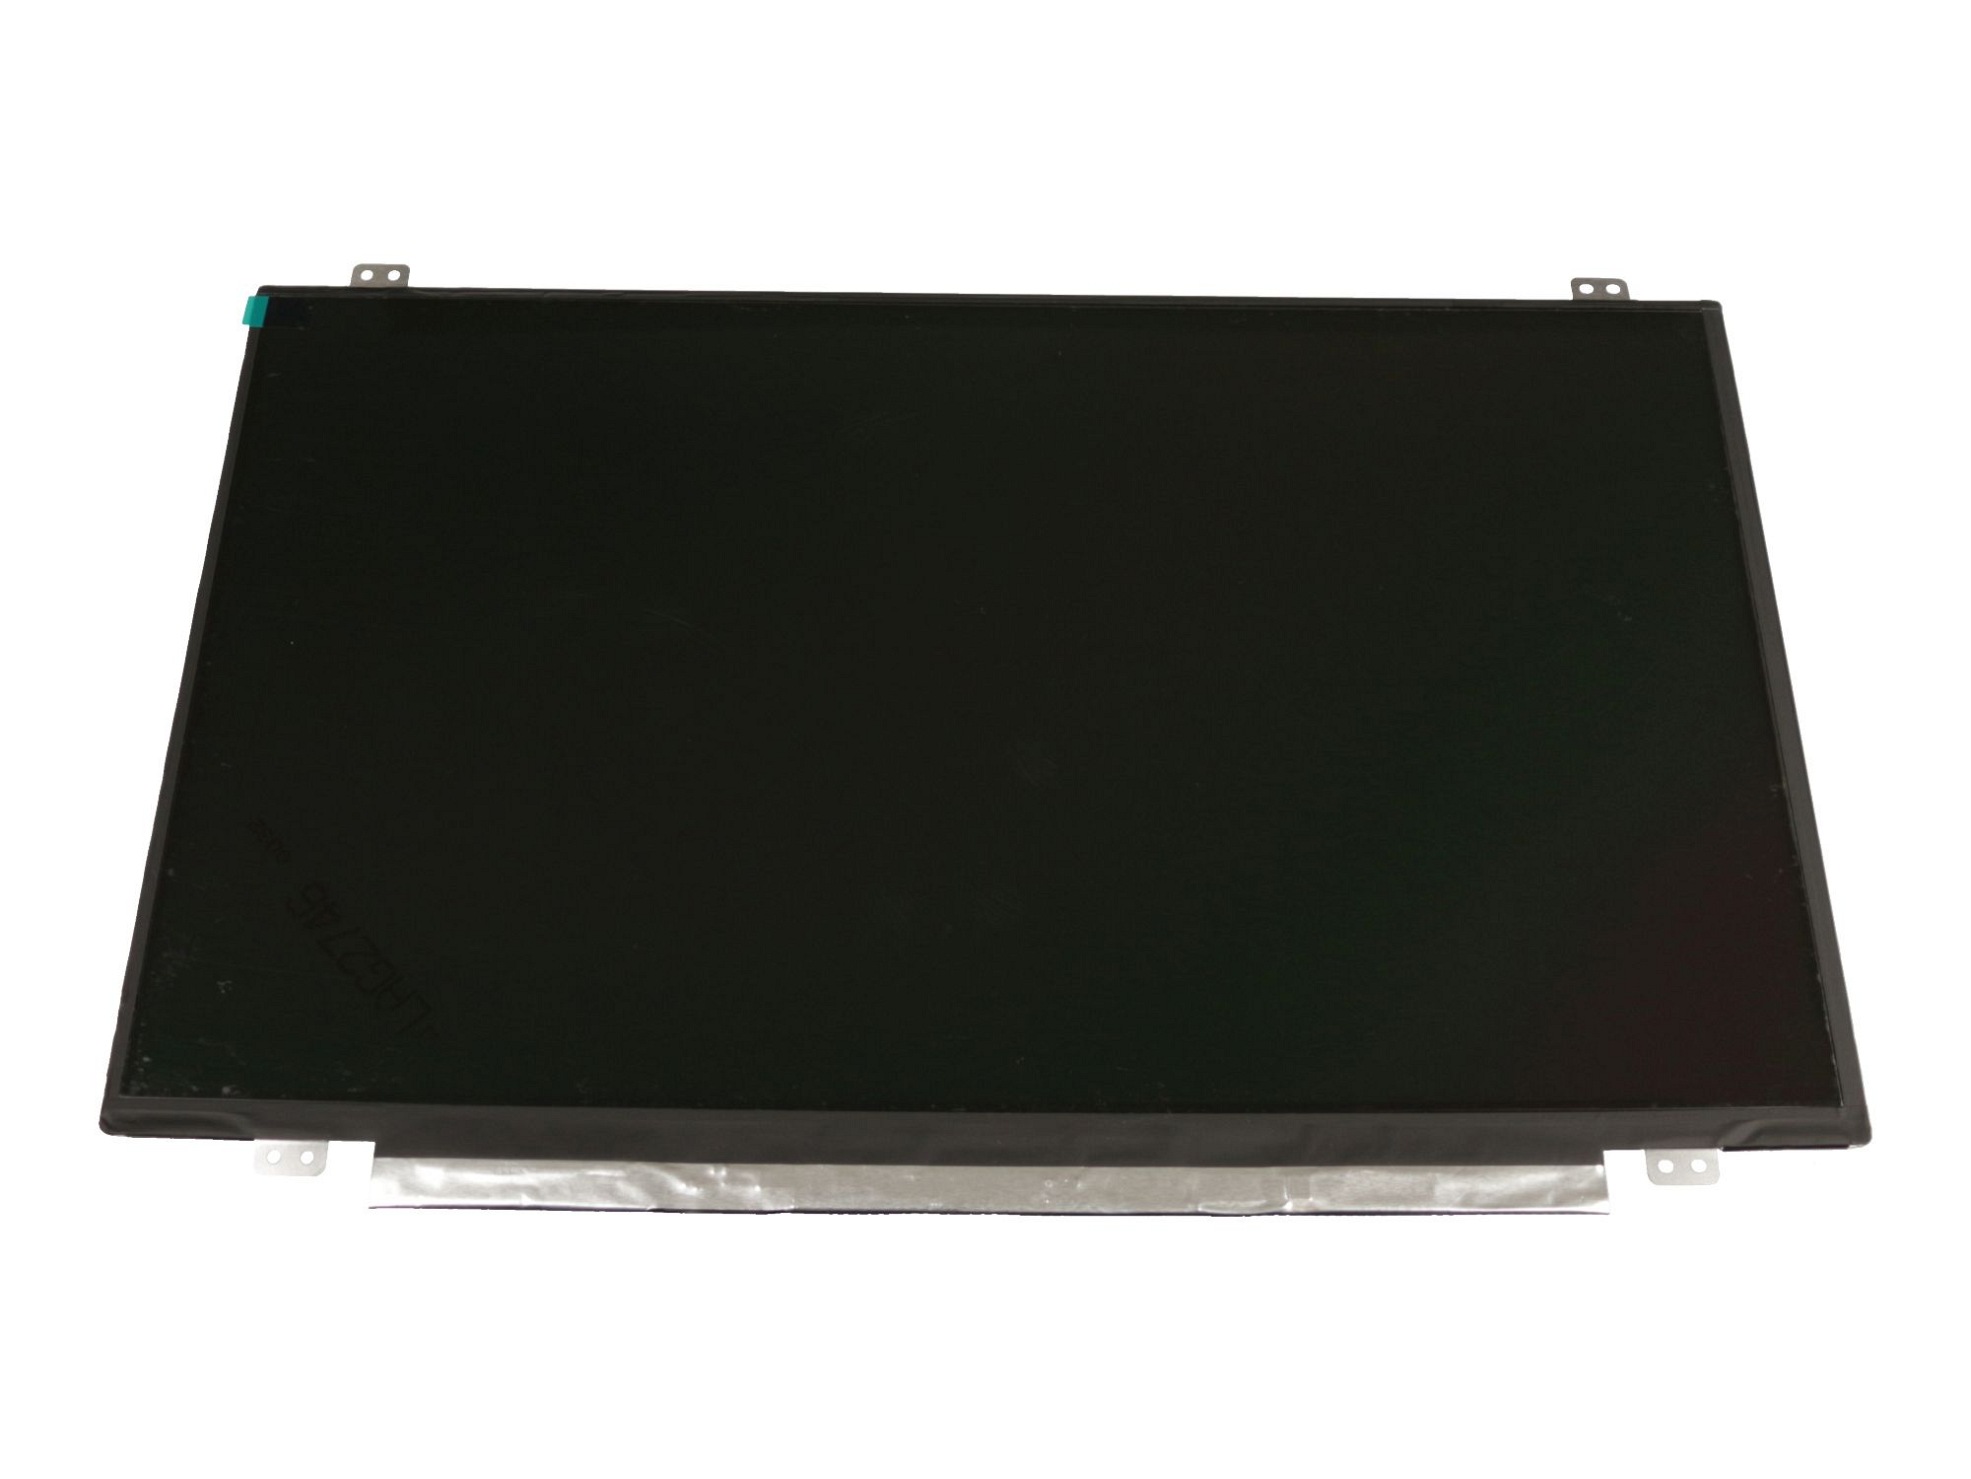 LG LP140WH8-TPL1 Display (1366x768) matt slimline